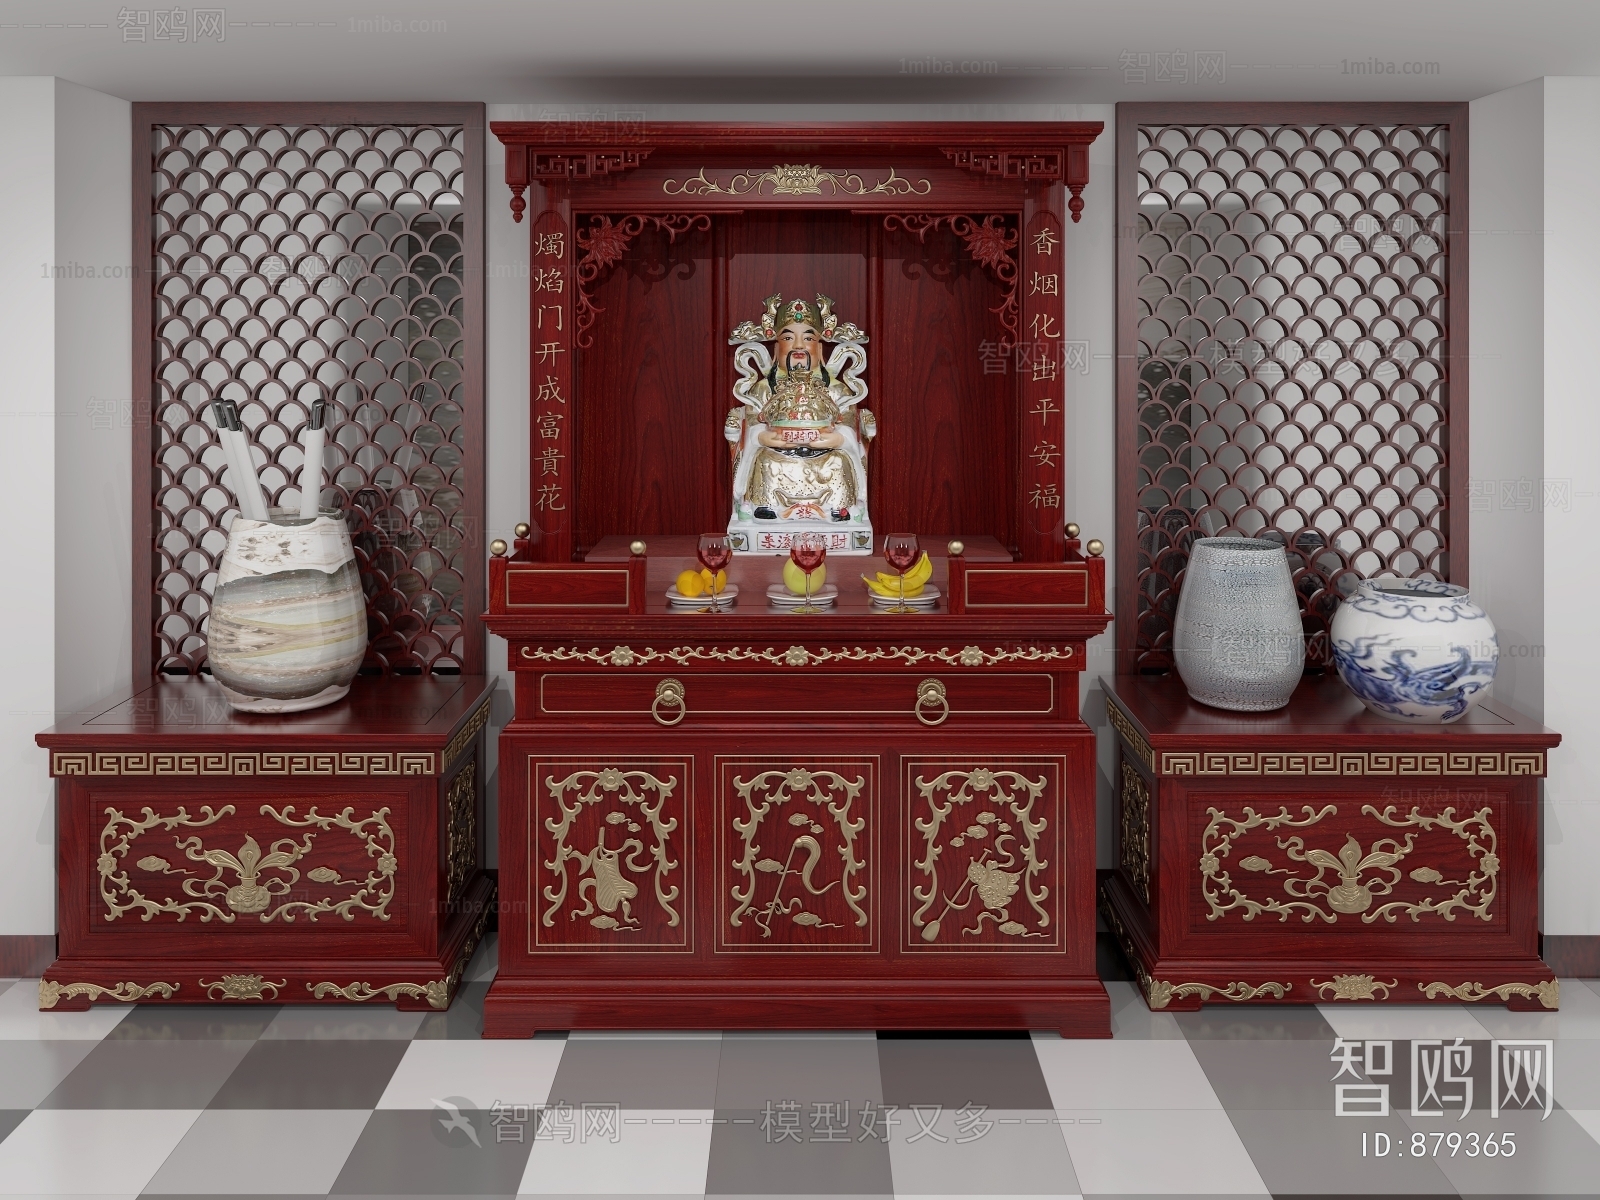 Chinese Style Buddhist Niche